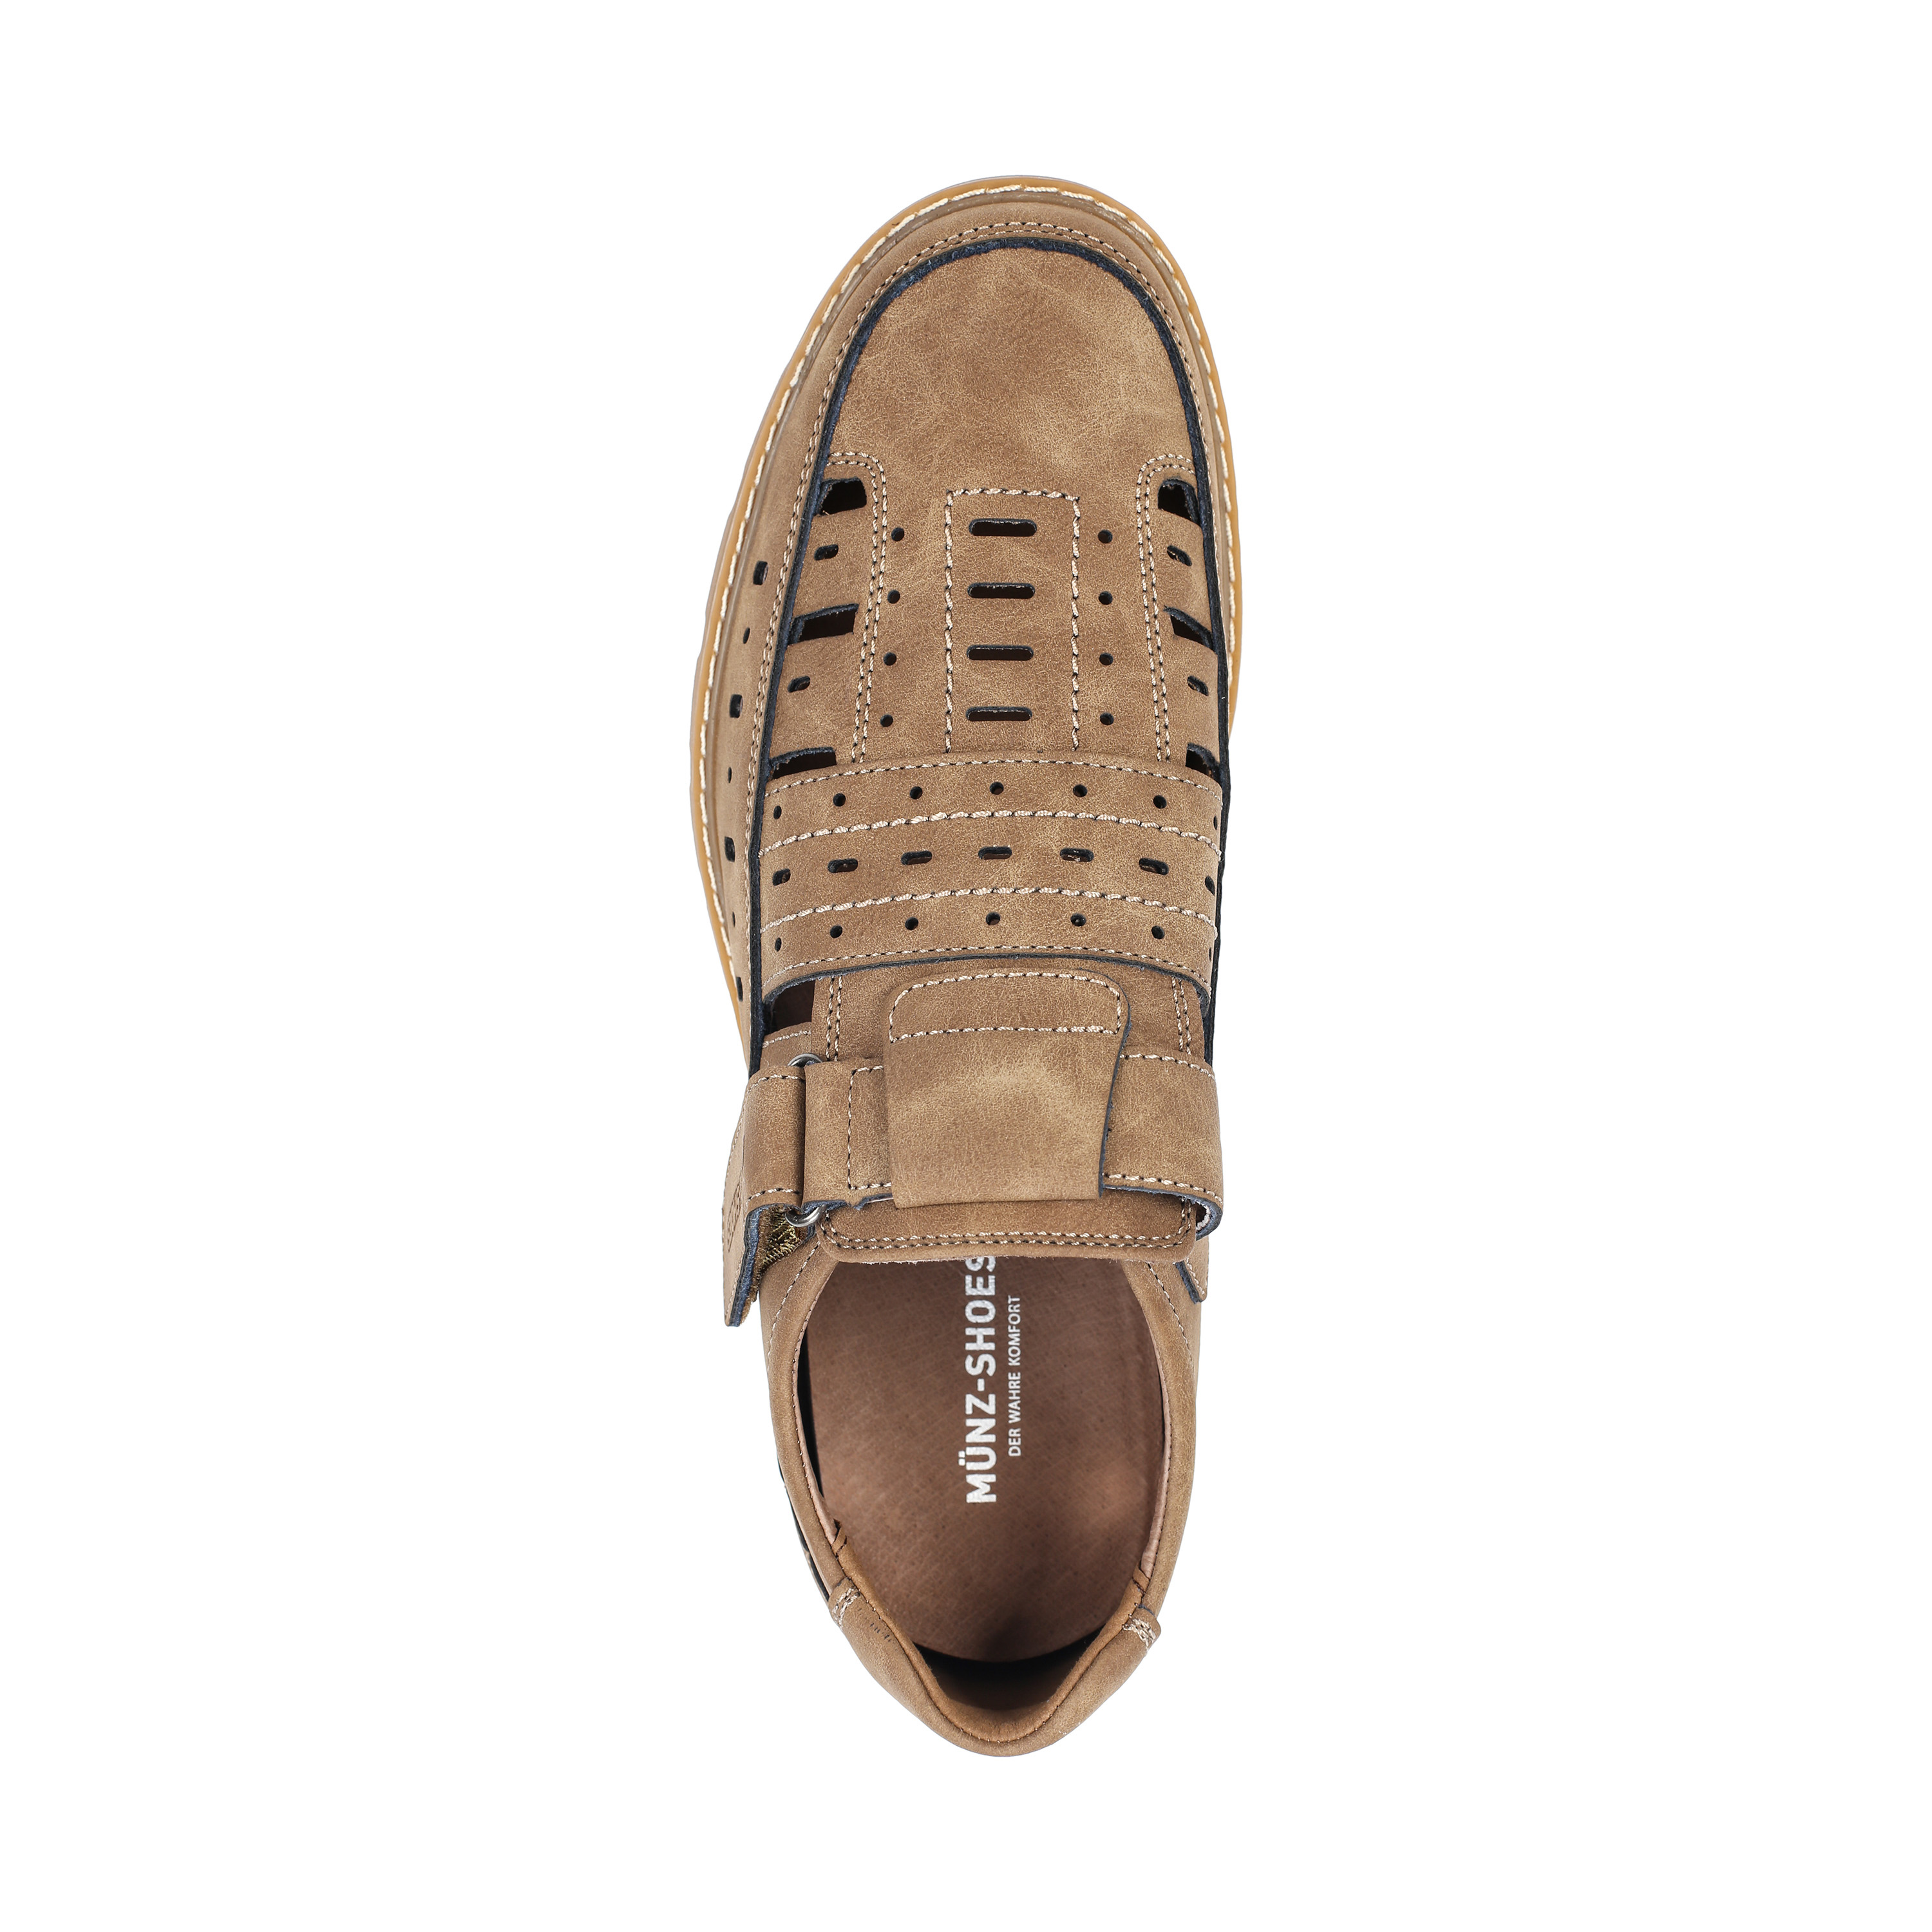 Полуботинки MUNZ Shoes 187-180A-1609 187-180A-1609, цвет коричневый, размер 42 туфли - фото 5